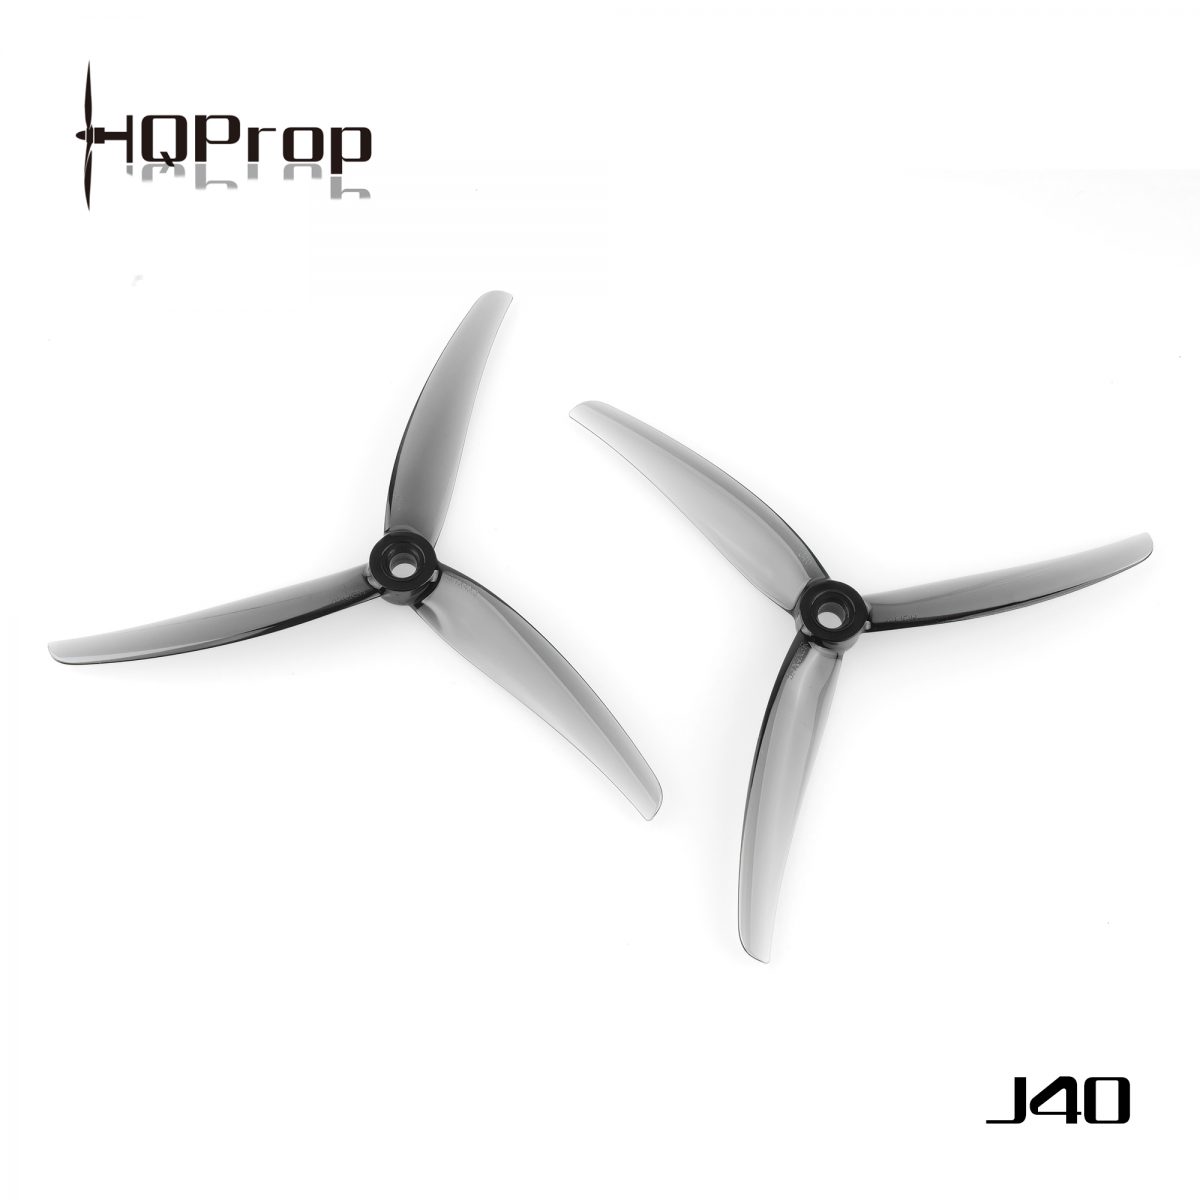 hq juicy prop,hq j40 propeller